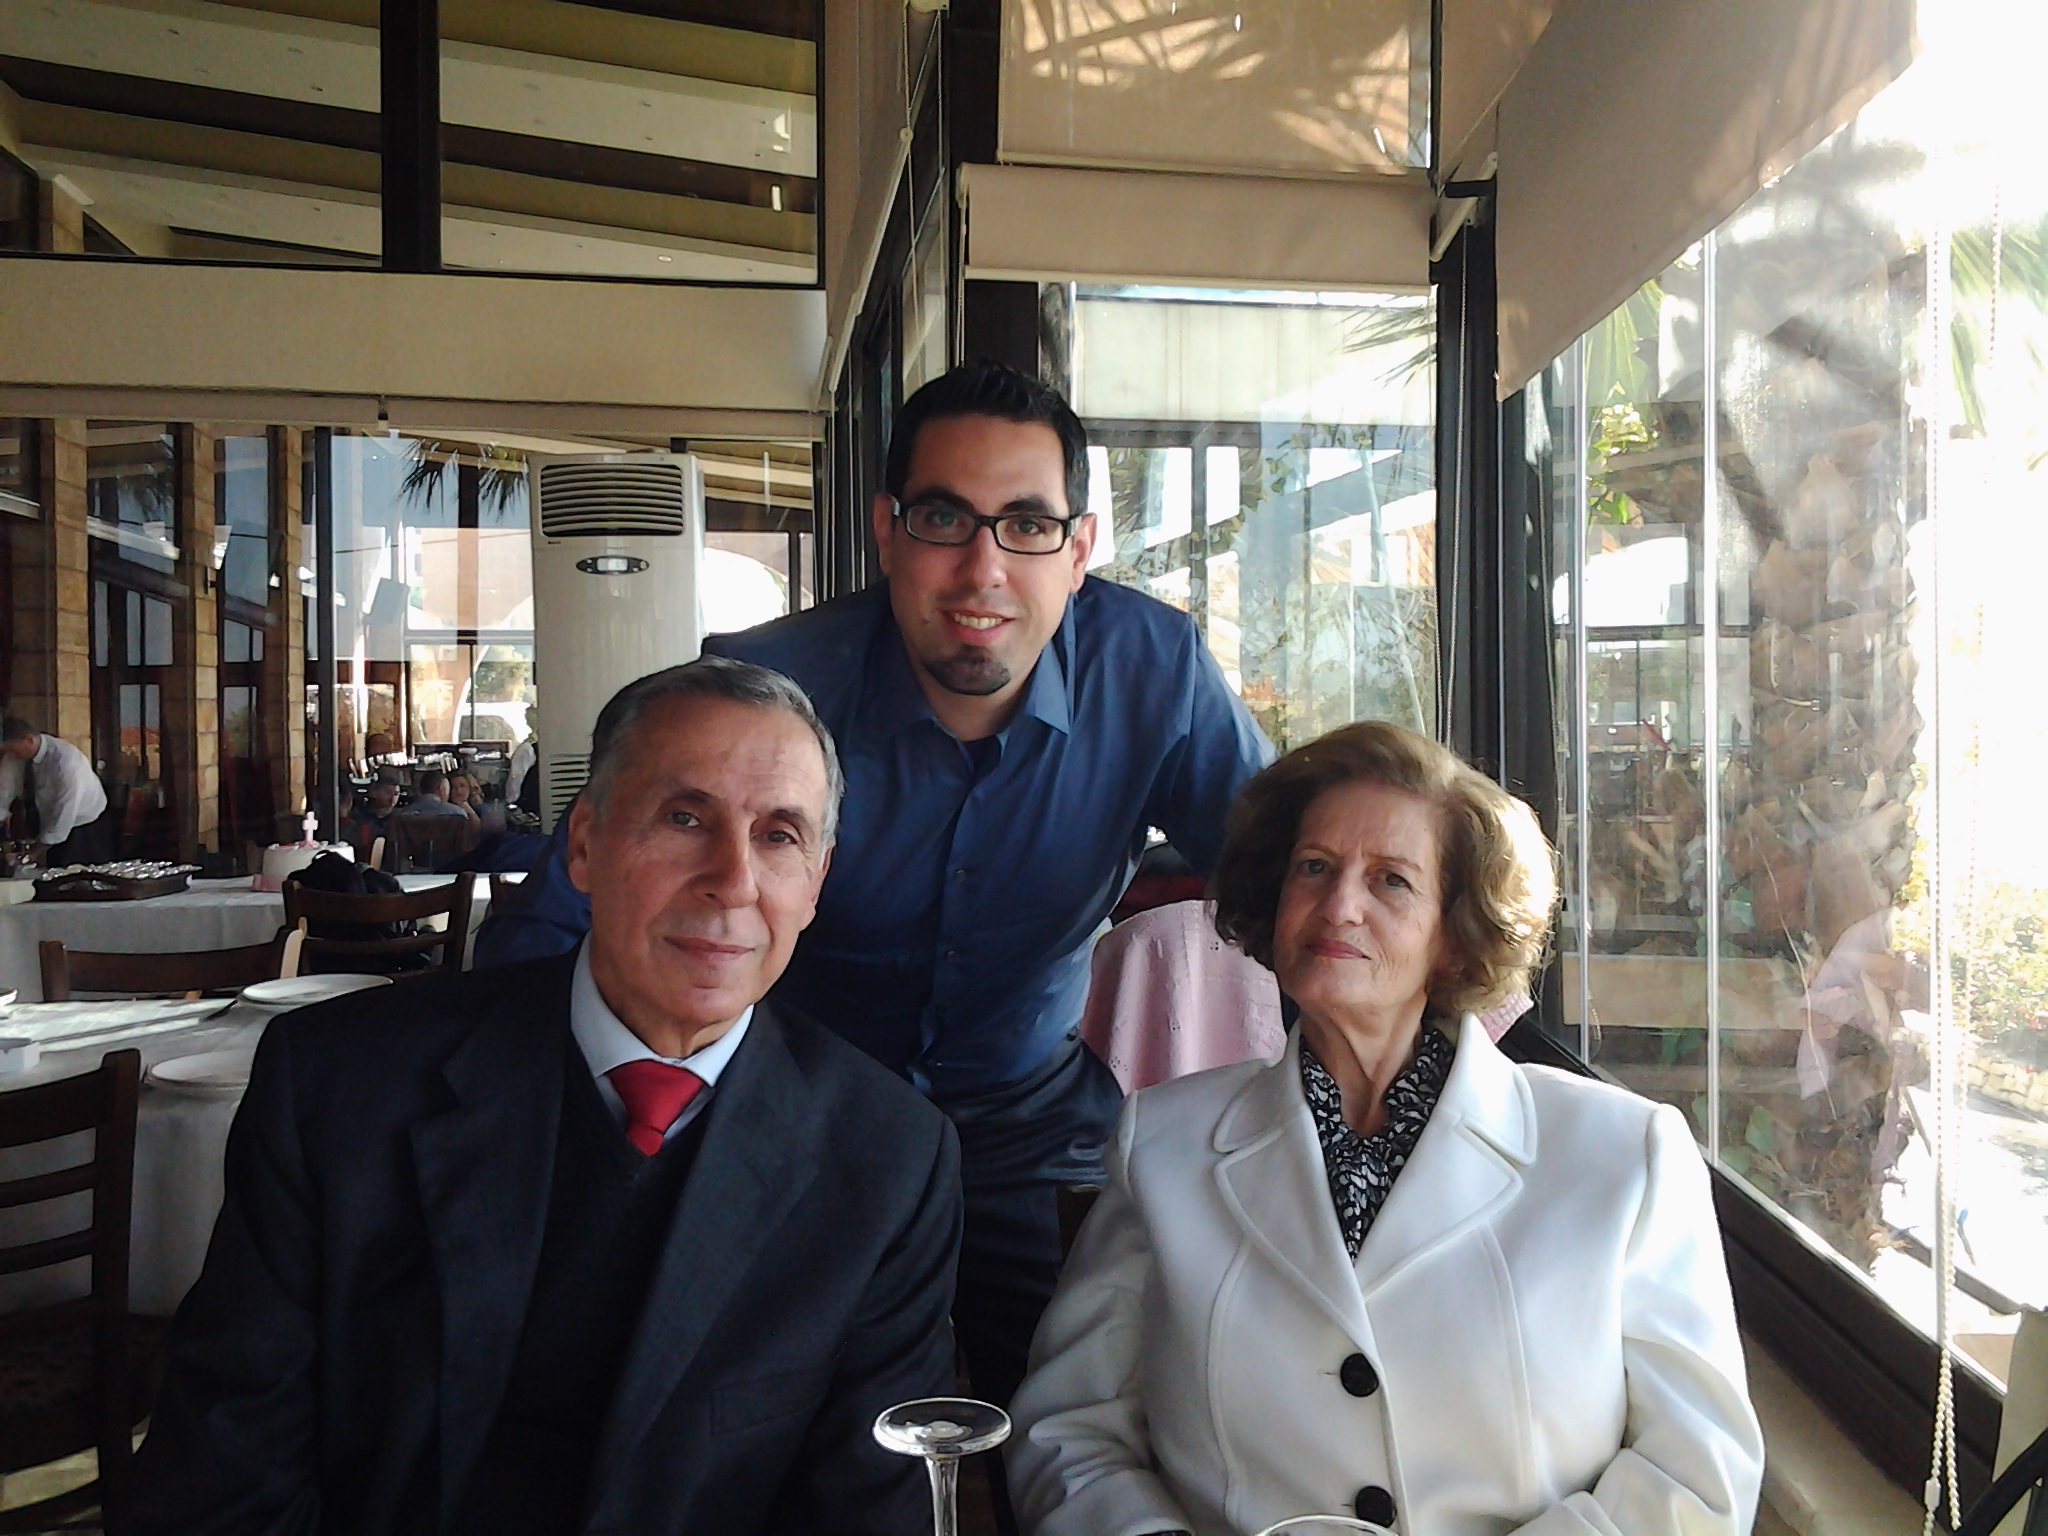 Alain Khayat with his parents Salma and Joseph.